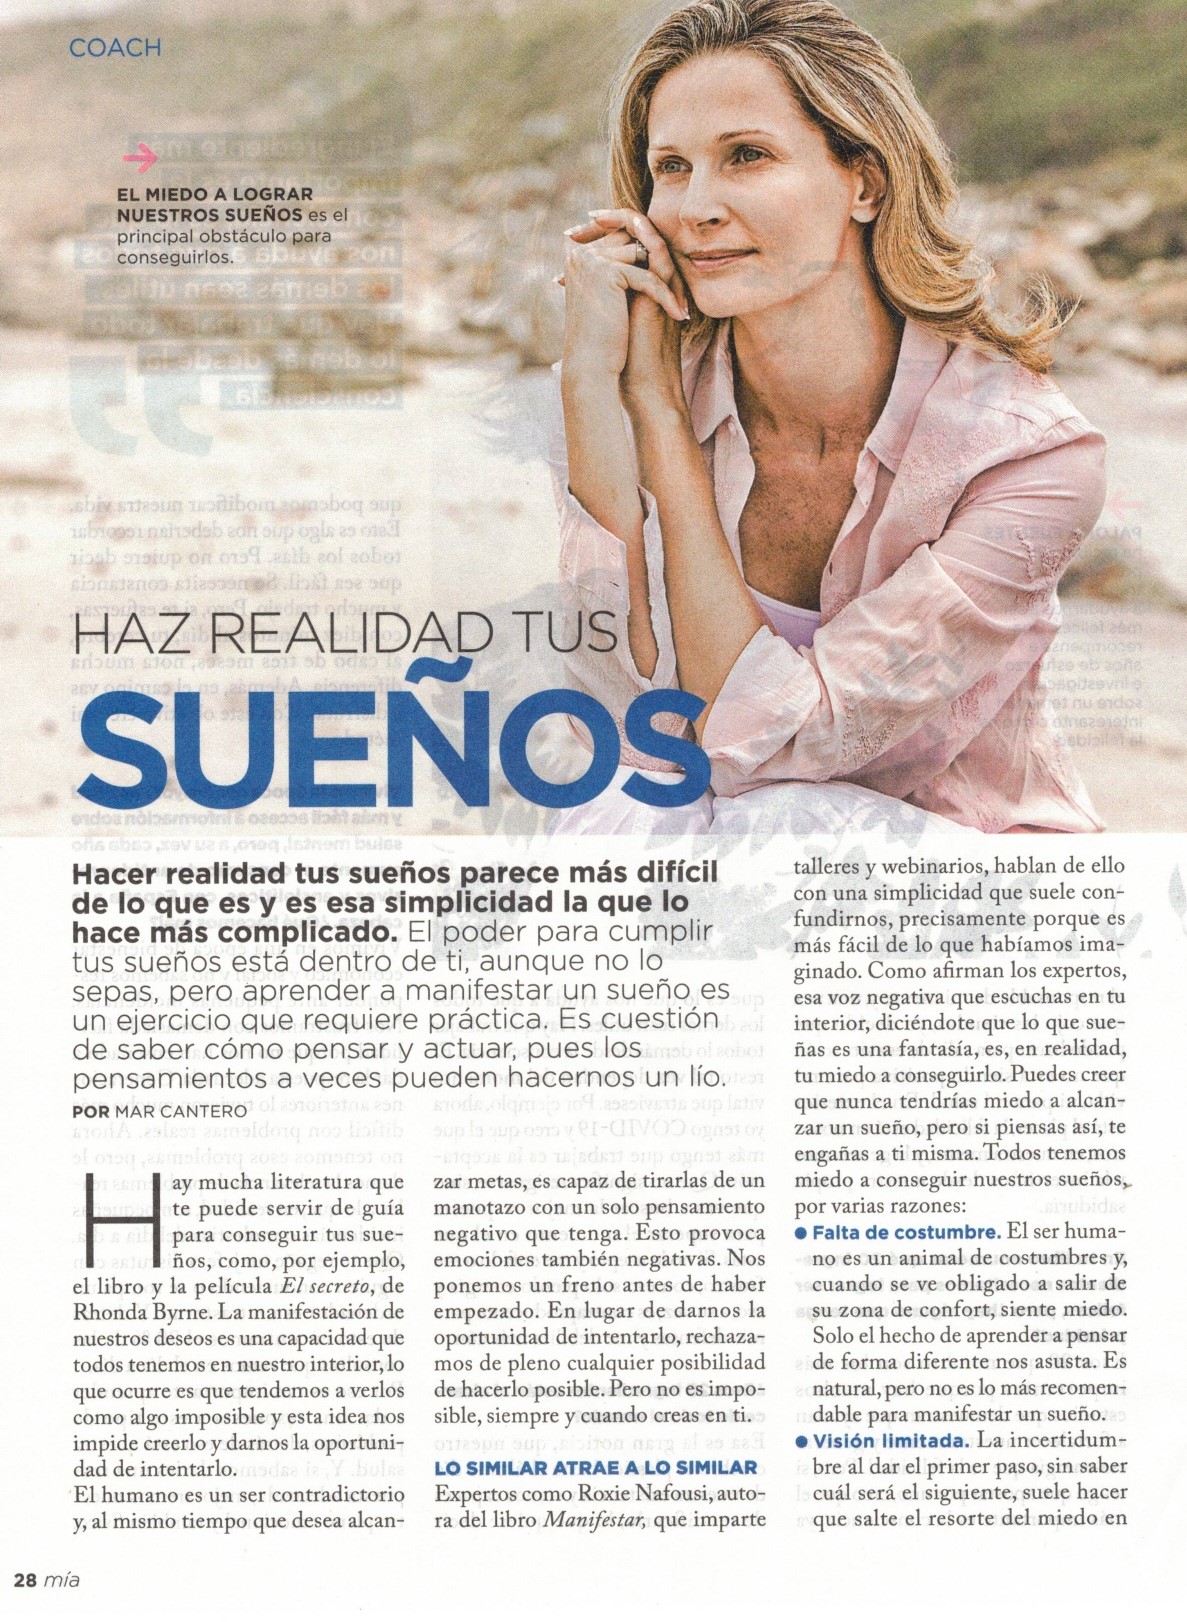 Mar Cantero, Meditar es fácil, pag 1, Mar Cantero, revista Mía, www.marcantero.com